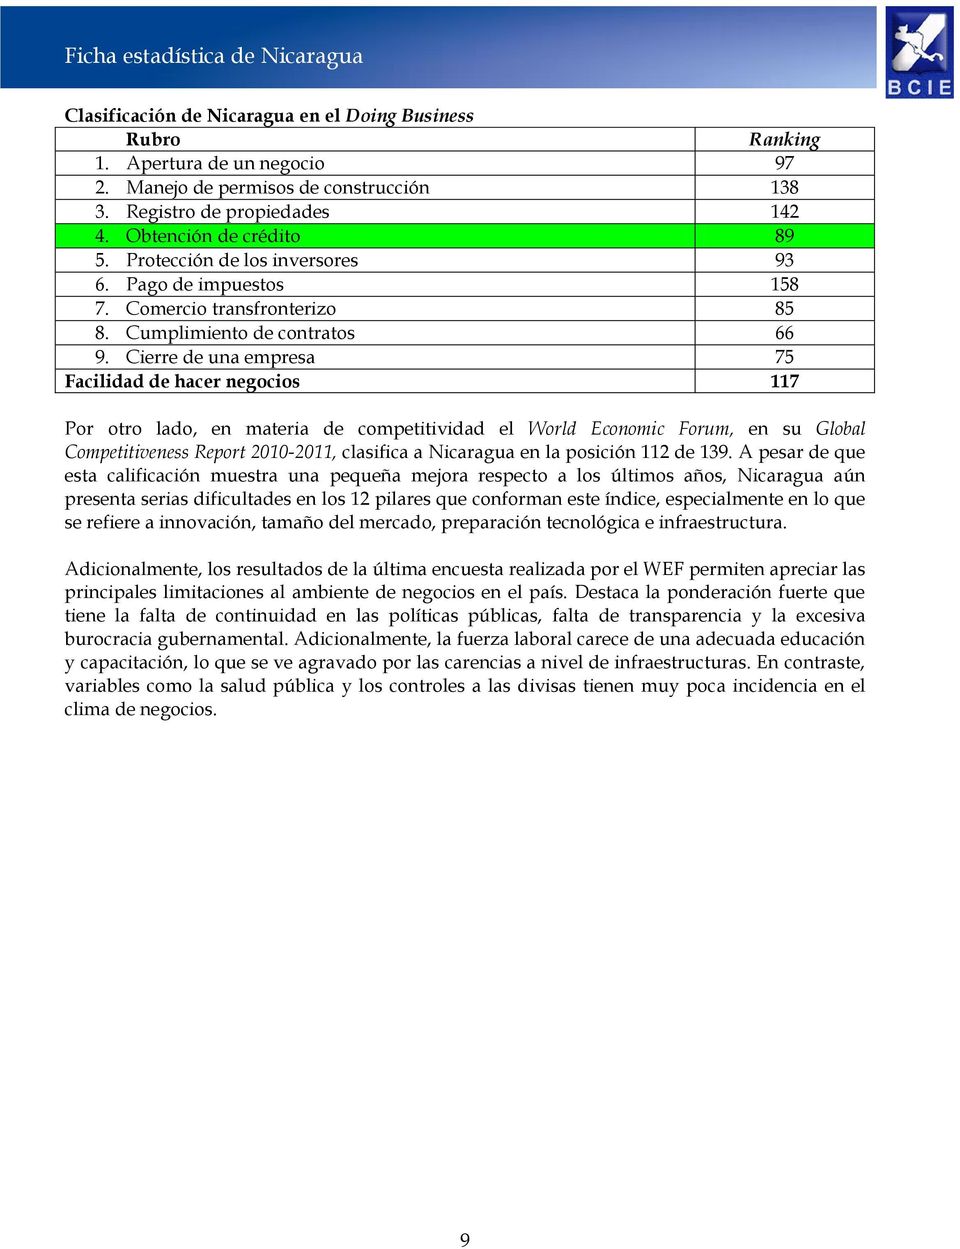 Cierre de una empresa 75 Facilidad de hacer negocios 117 Por otro lado, en materia de competitividad el World Economic Forum, en su Global Competitiveness Report 2010-2011, clasifica a Nicaragua en